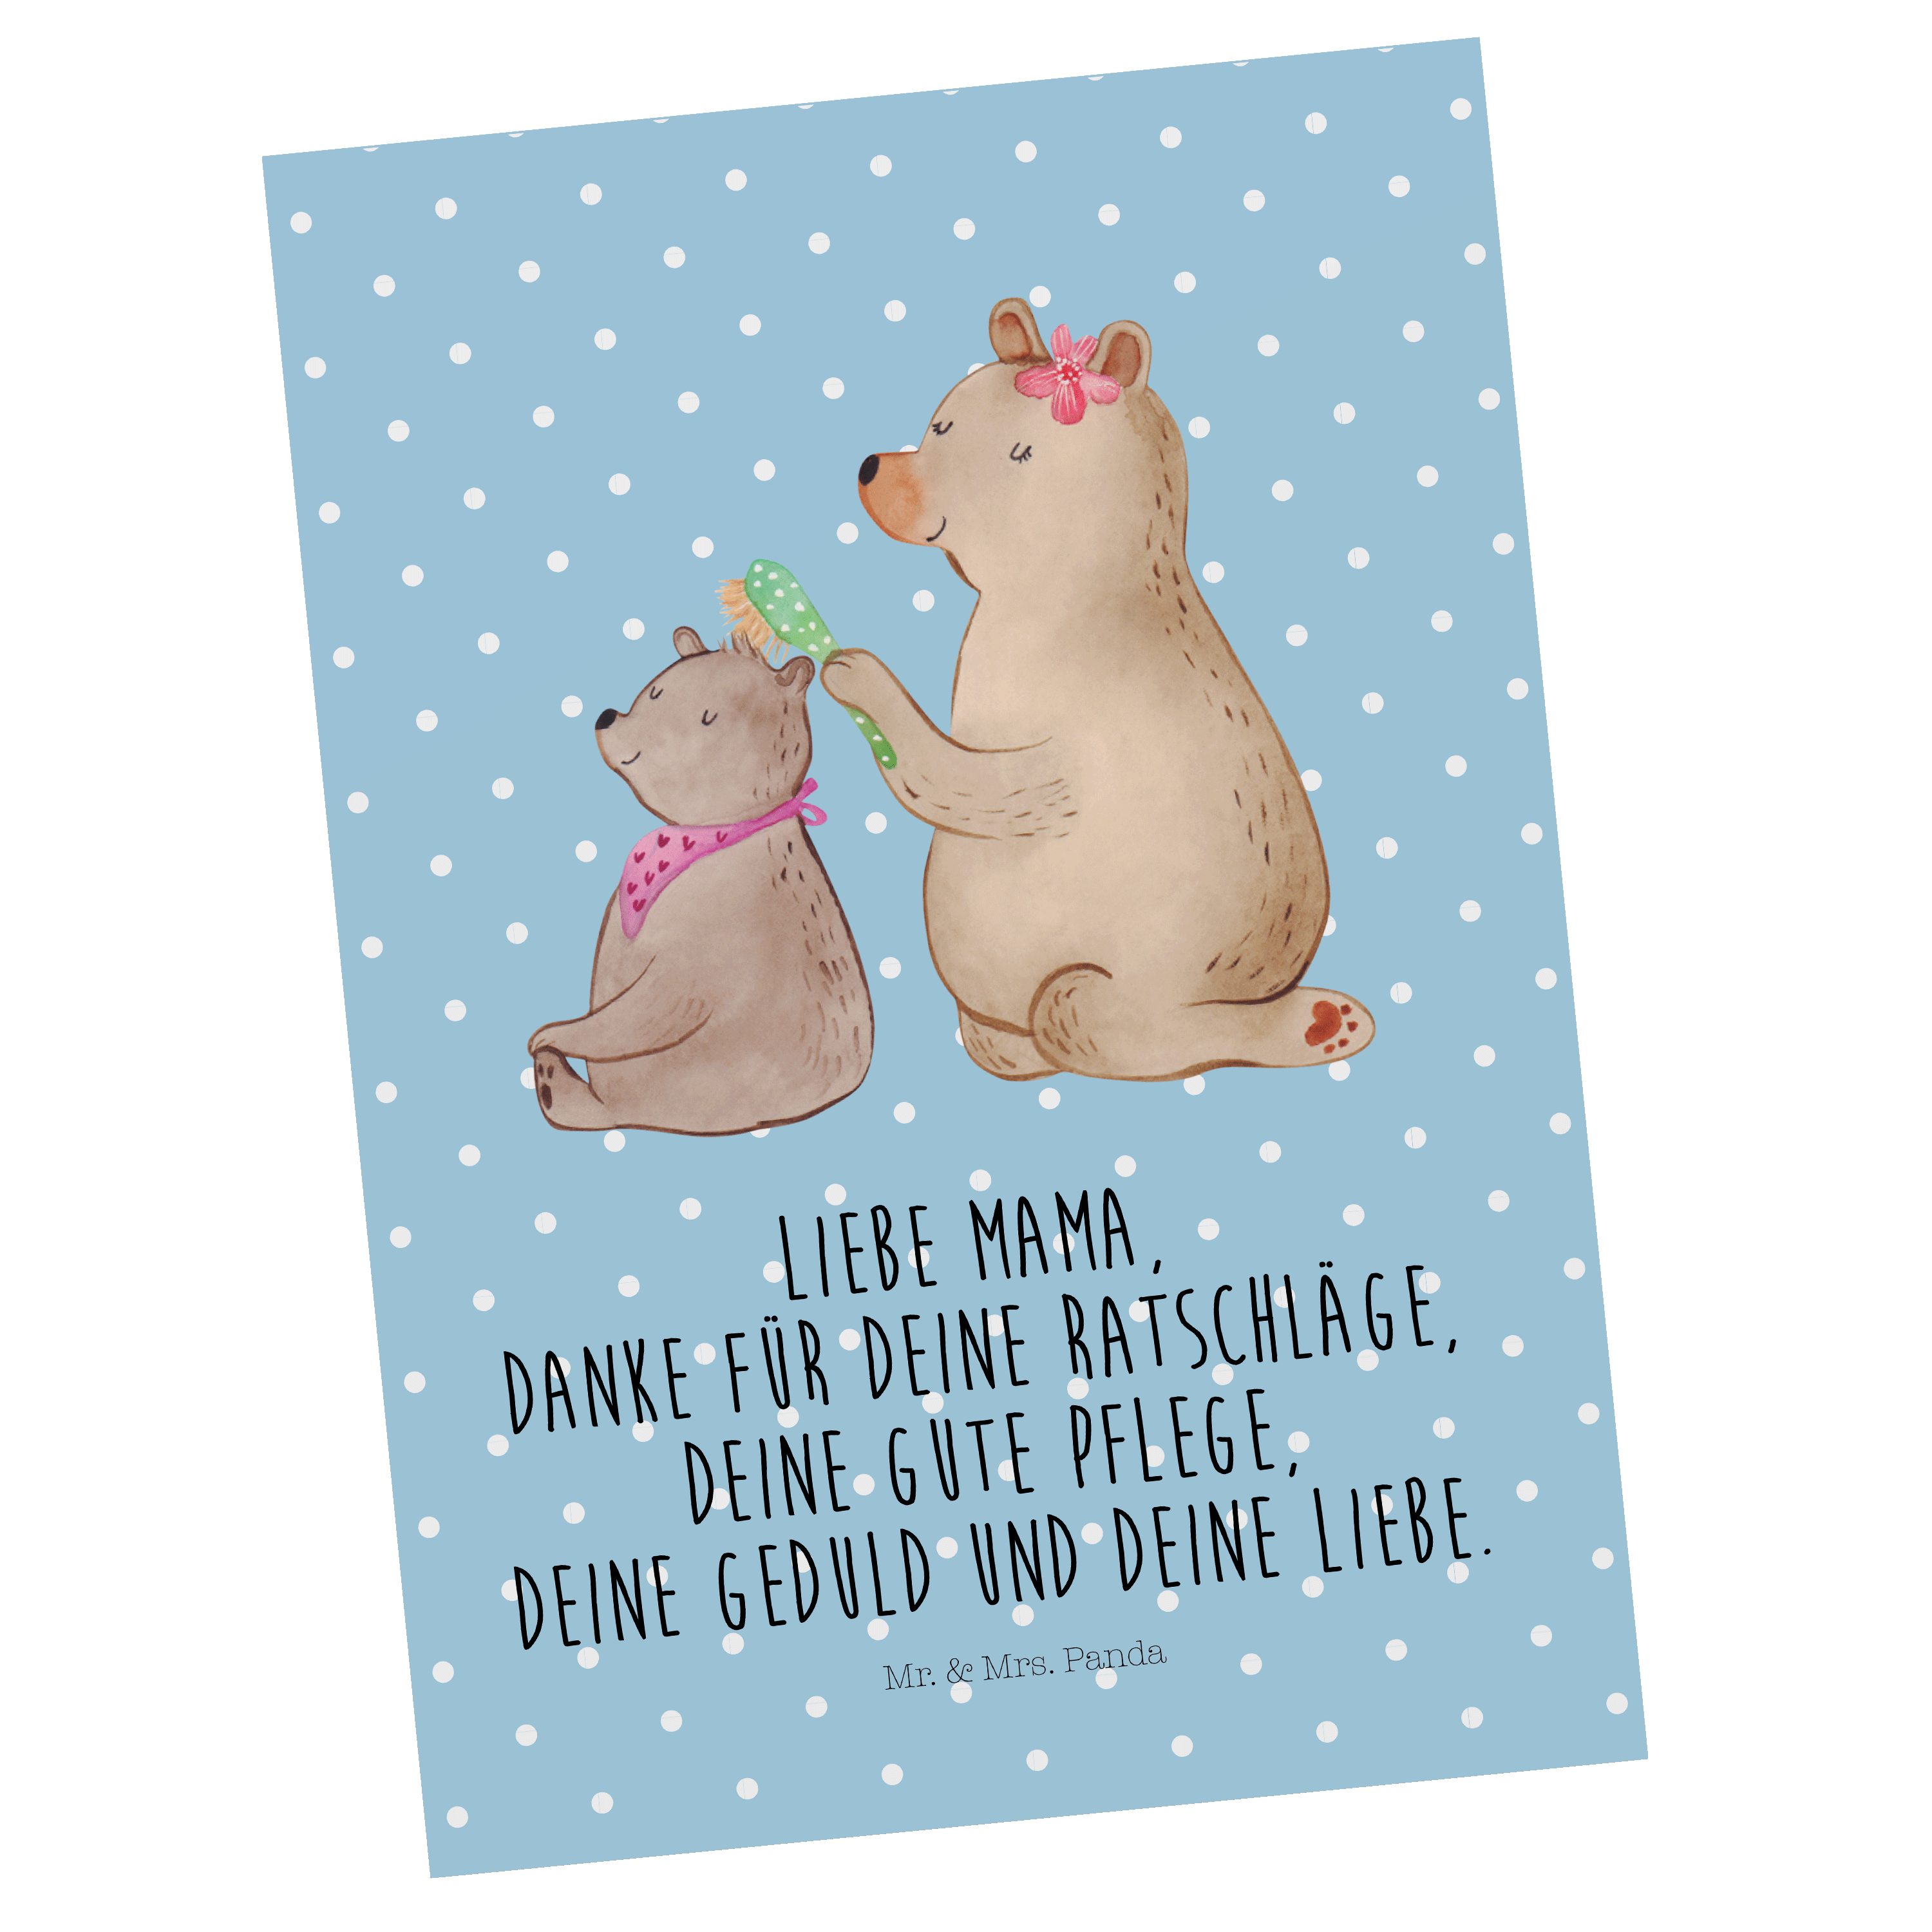 Mr. & Mrs. Panda Bären mit Familie, Geschenk, Bär - Postkarte Geschenkkarte, Kind Blau Pastell 